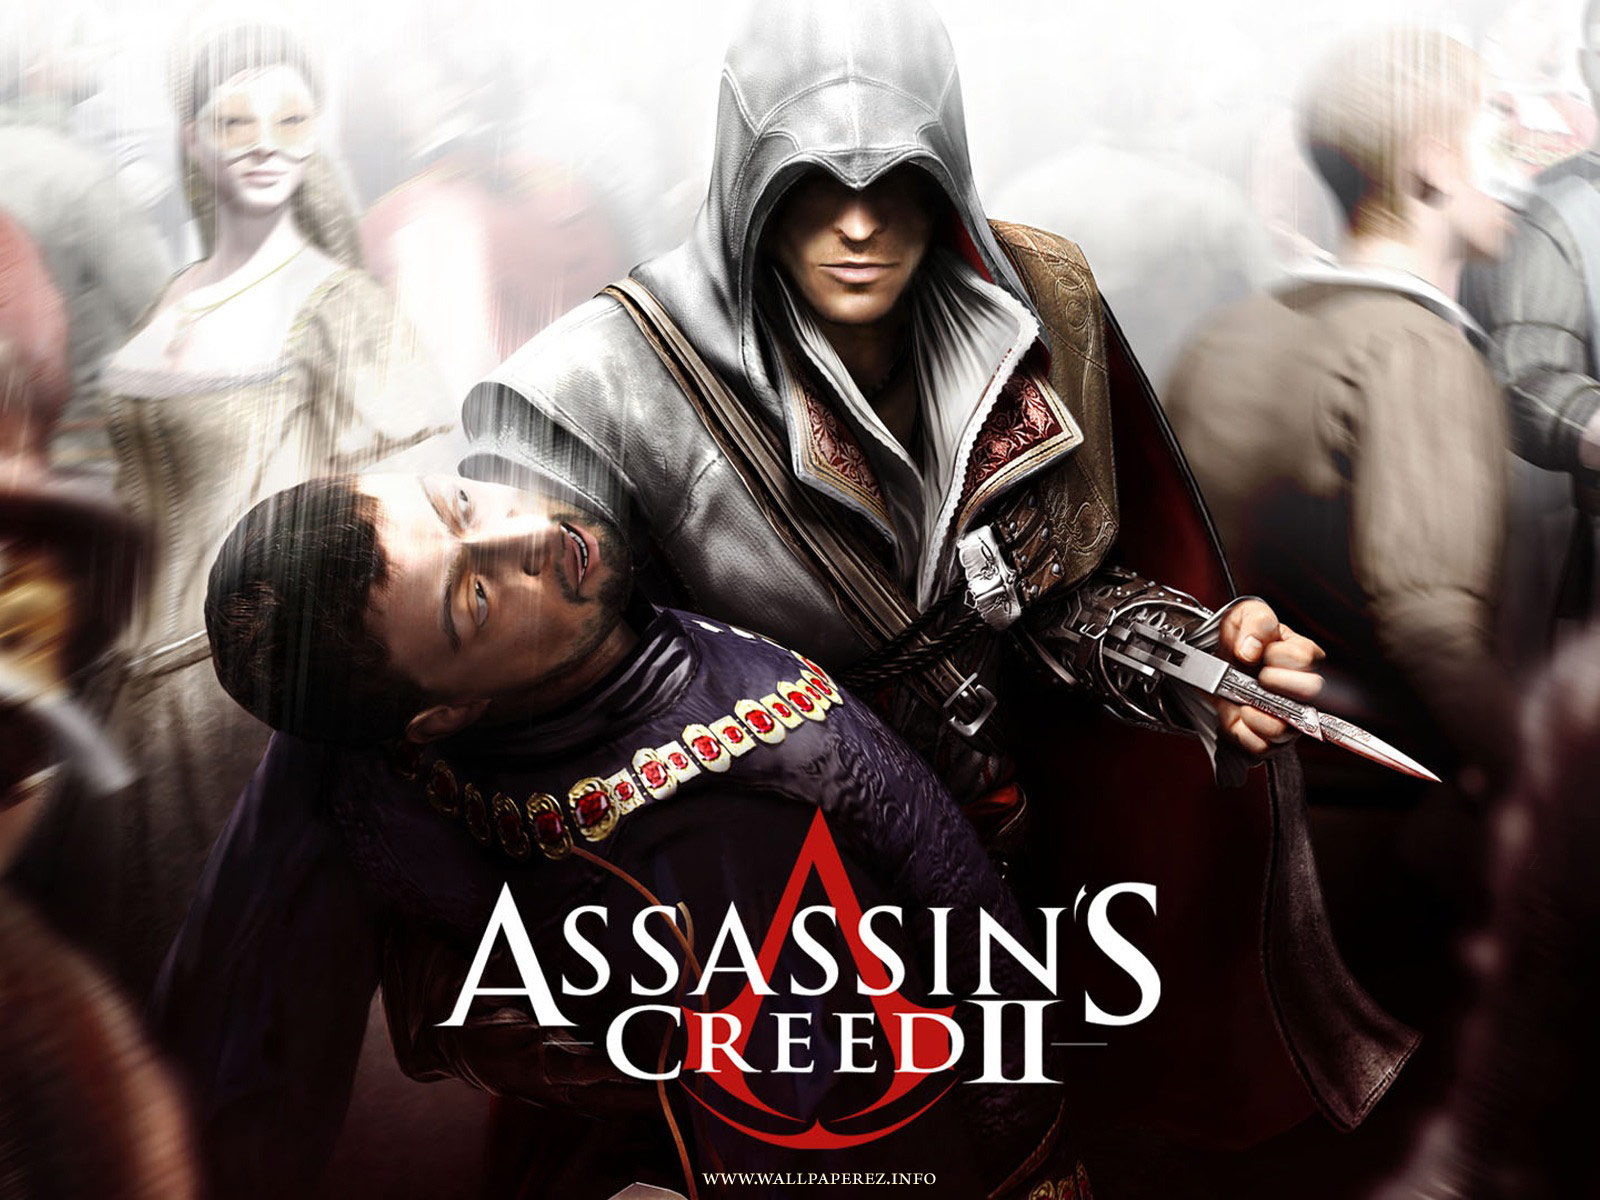 Assassin's creed 3 wallpaper hd,Assassin's creed 3 wallpaper,Assassin ...